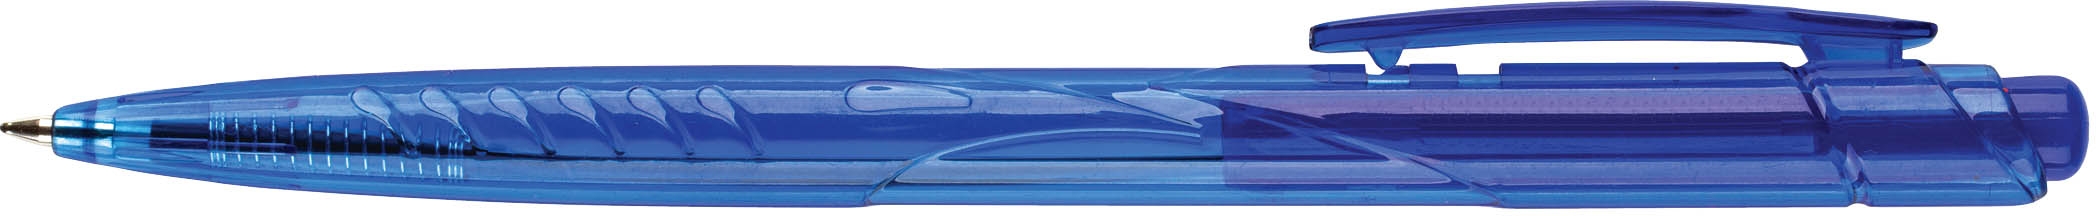 Ручка шариковая Centrum Point 88066, синяя, 0,7 мм, 1 шт.